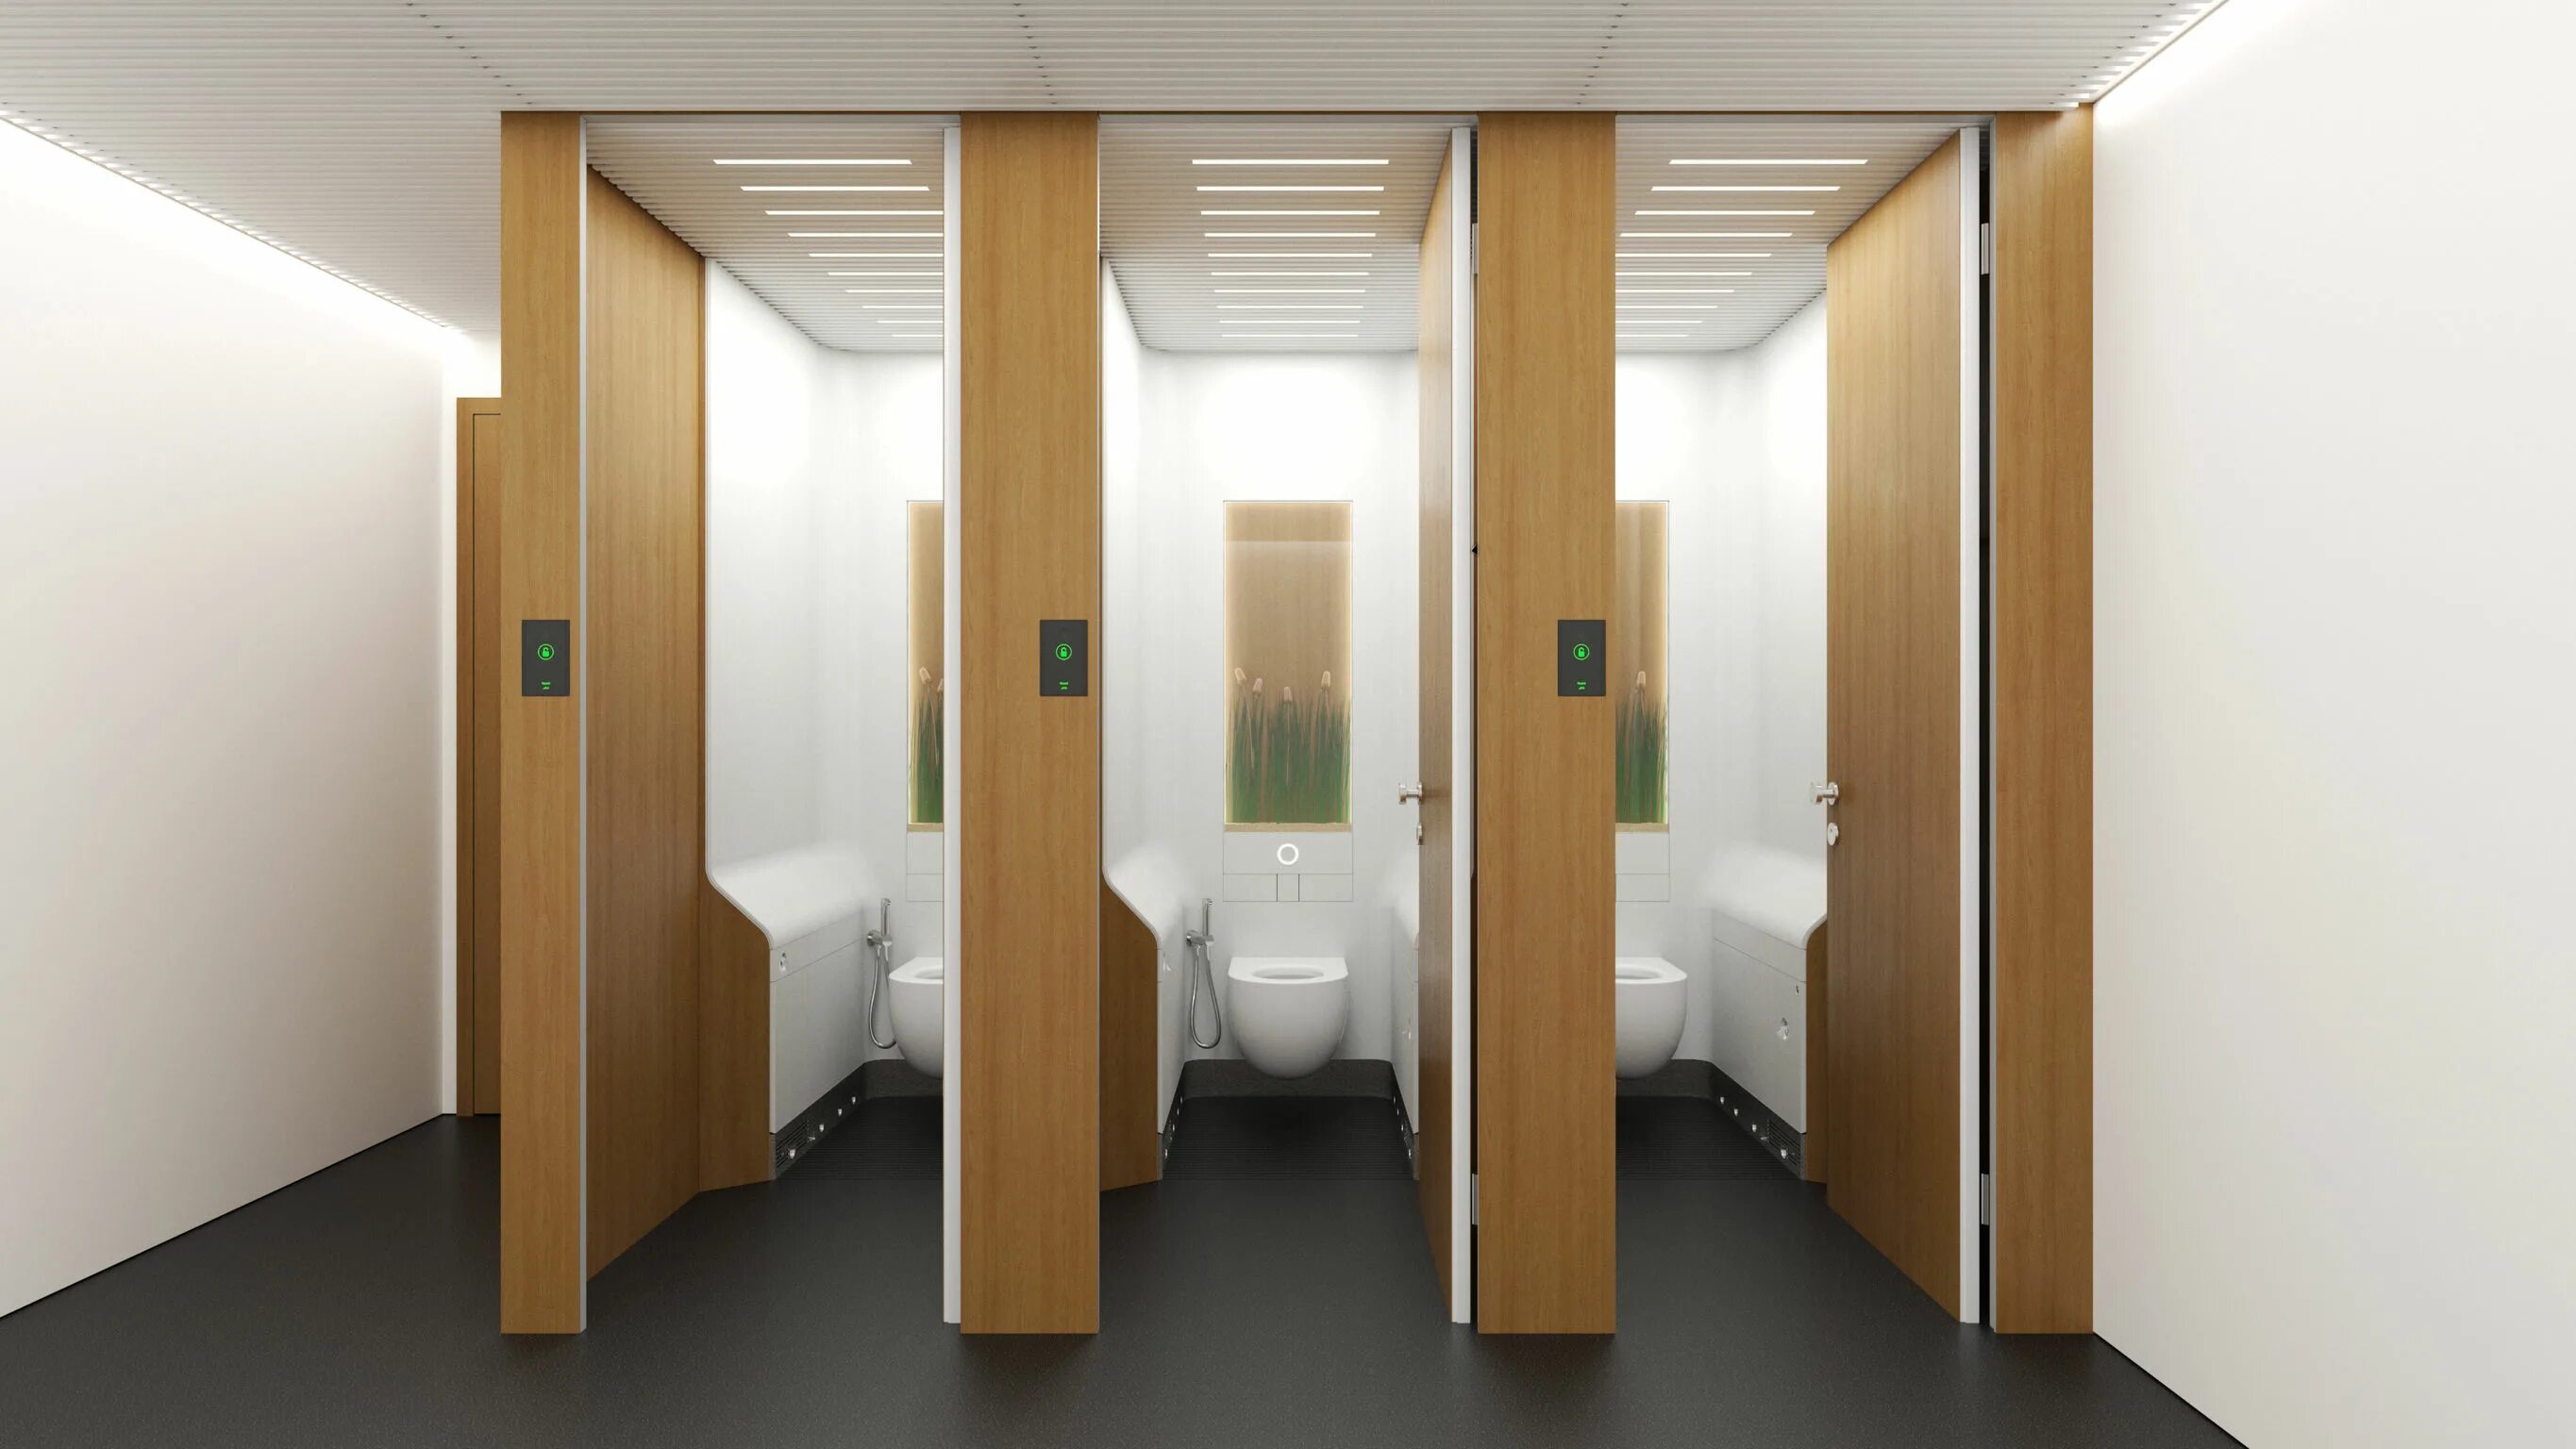 HPL панели для санузла. HPL панели для ванной комнаты. Дизайн школьного туалета. Туалеты в школе дизайн. Toilet laboratory много денег последняя версия